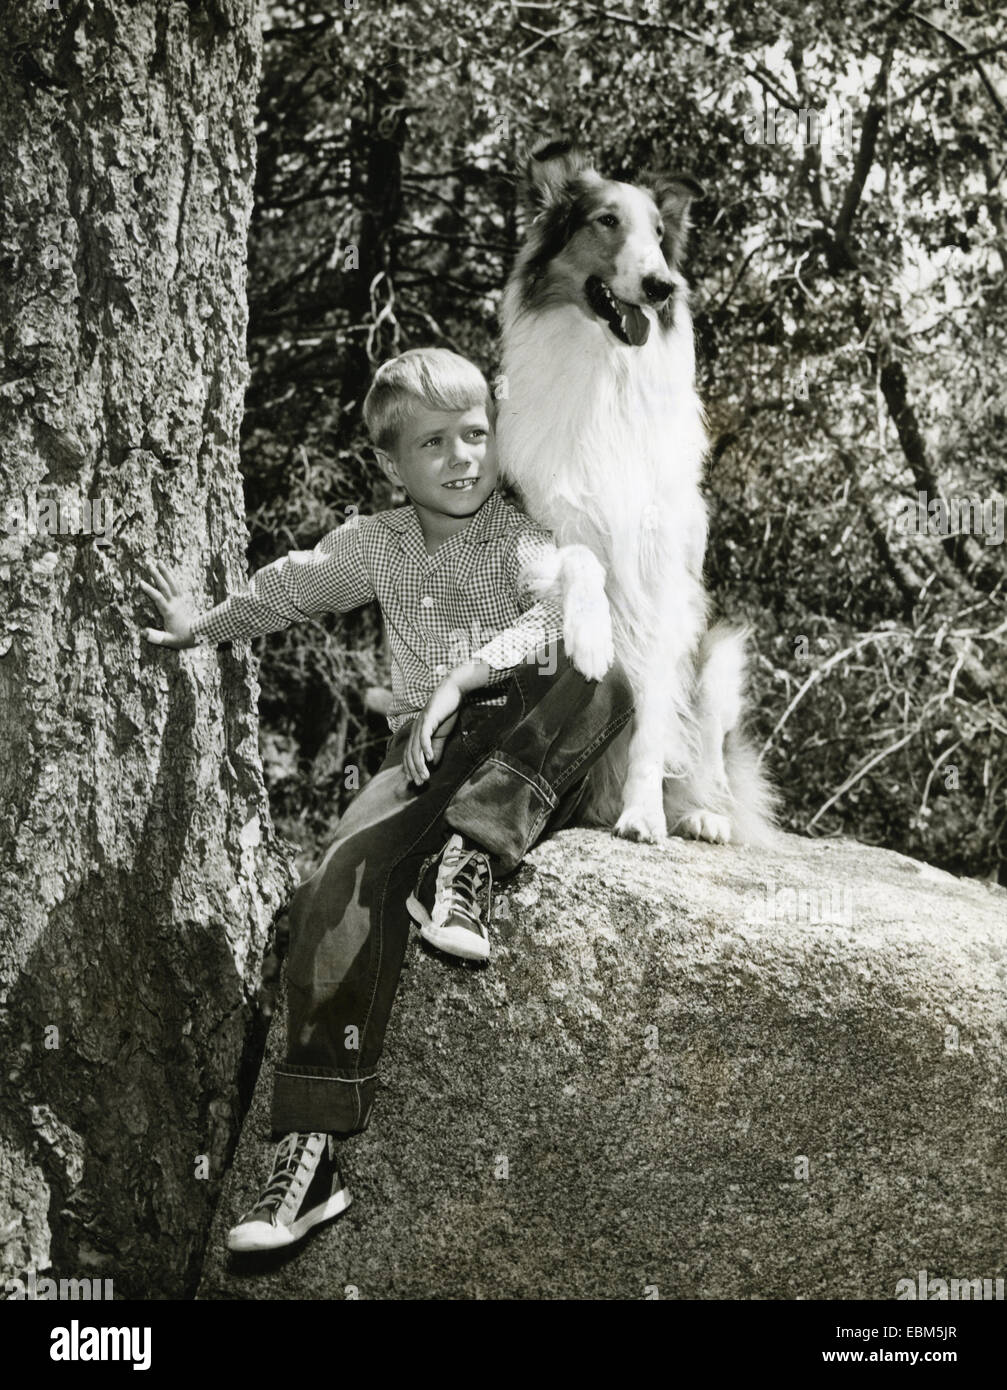 Lassie Us Cbs Fernsehserie Mit Jon Provost Als Timmy 1957 Stockfotografie Alamy 